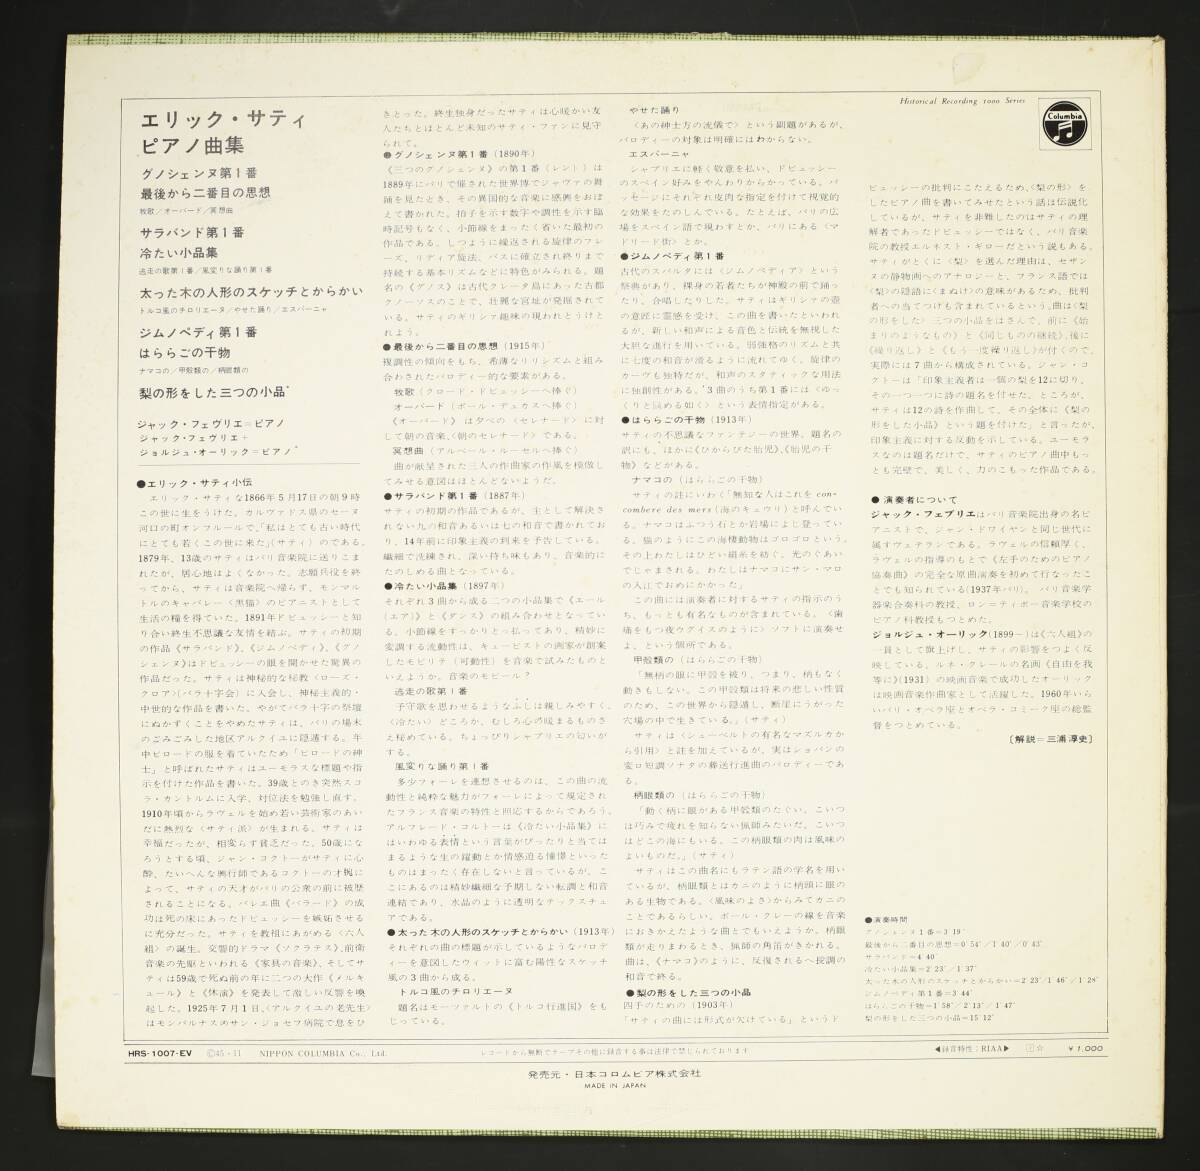 [ записано в Японии LP] Jack *fevulie/ Eric *sati фортепианная пьеса сборник ( средний хорошая вещь,Satie,Jacques Fevrier)